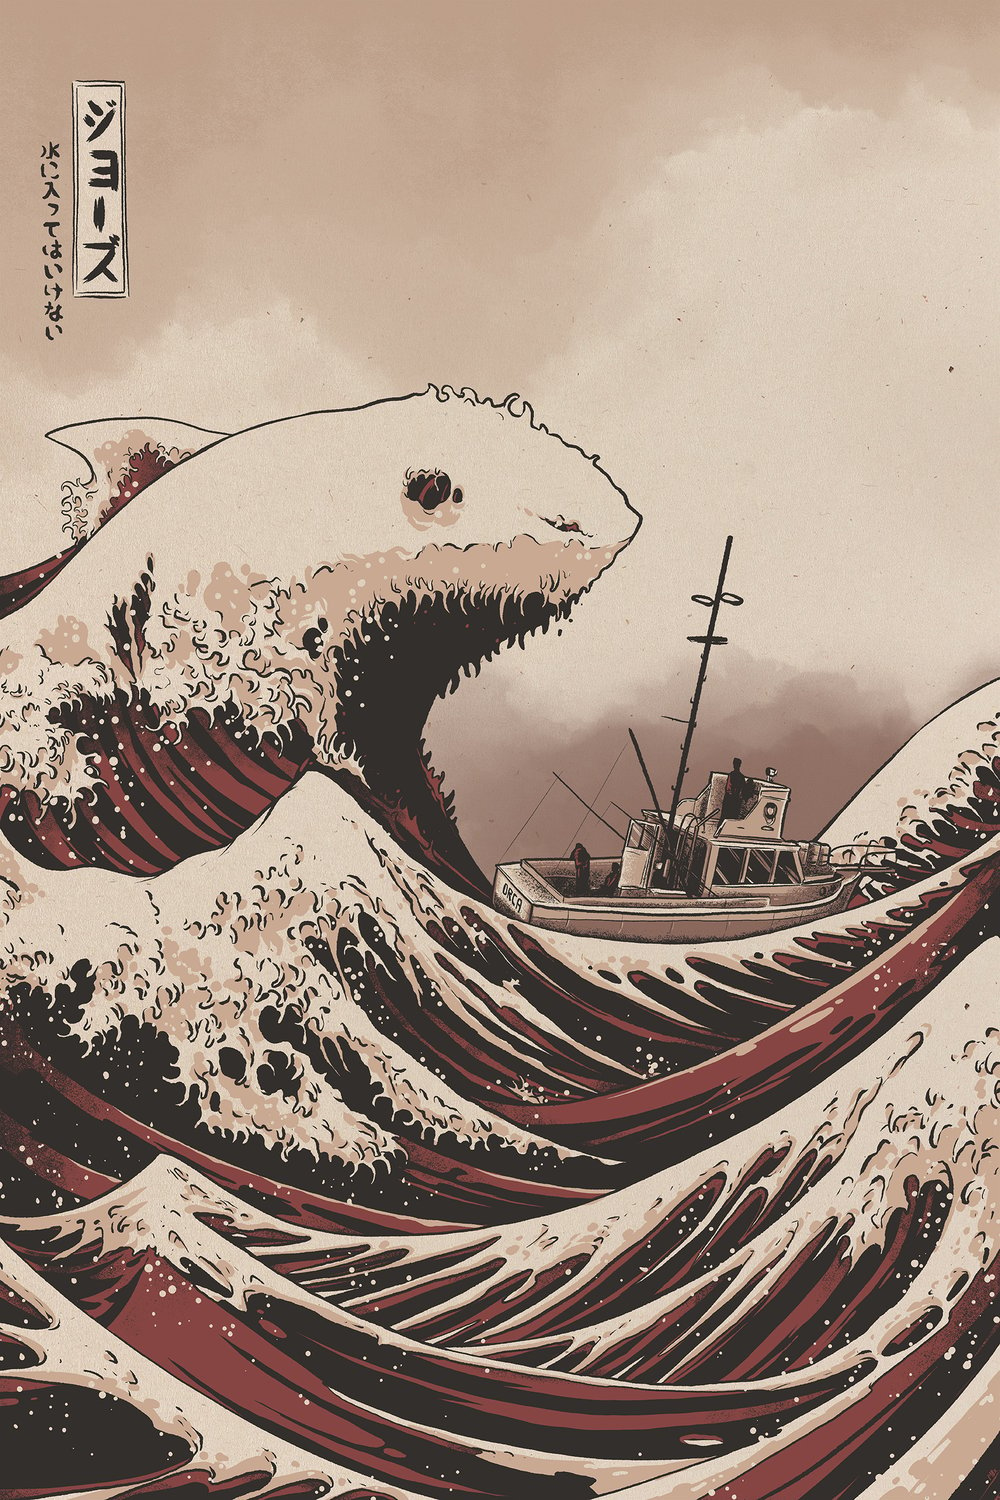 Jaws / Hokusai - 24x36" Screenprint Regular/Variant